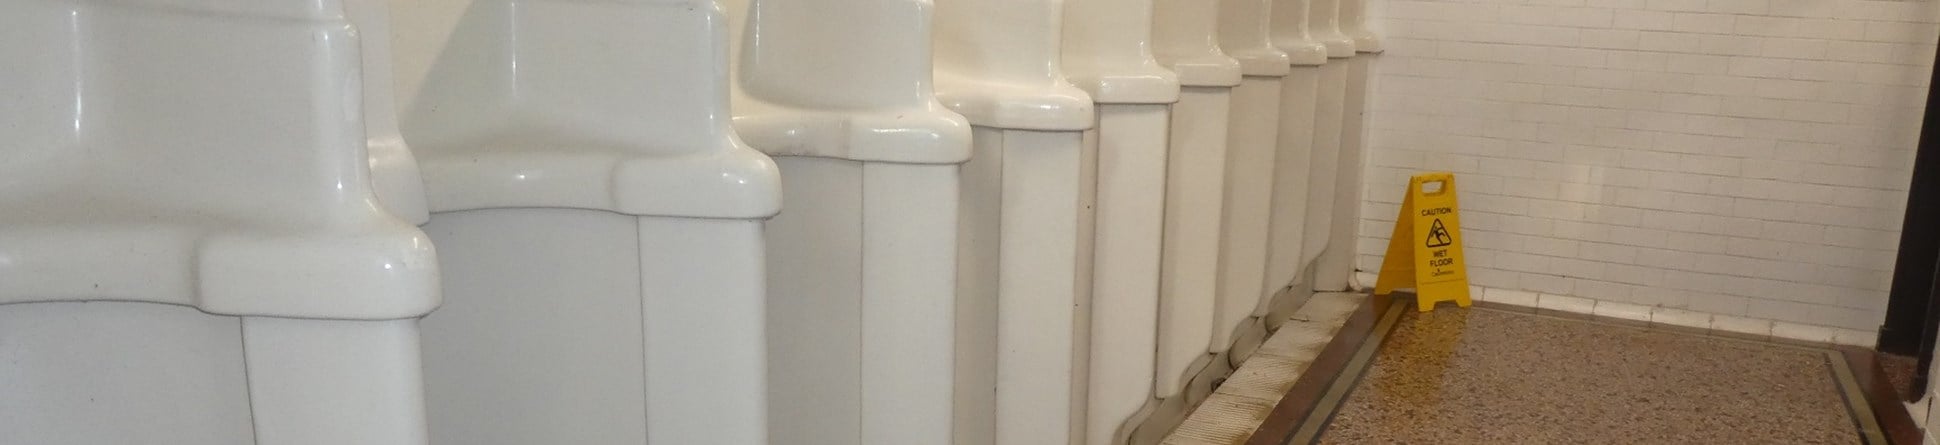 Urinals at Seaburn public conveniences